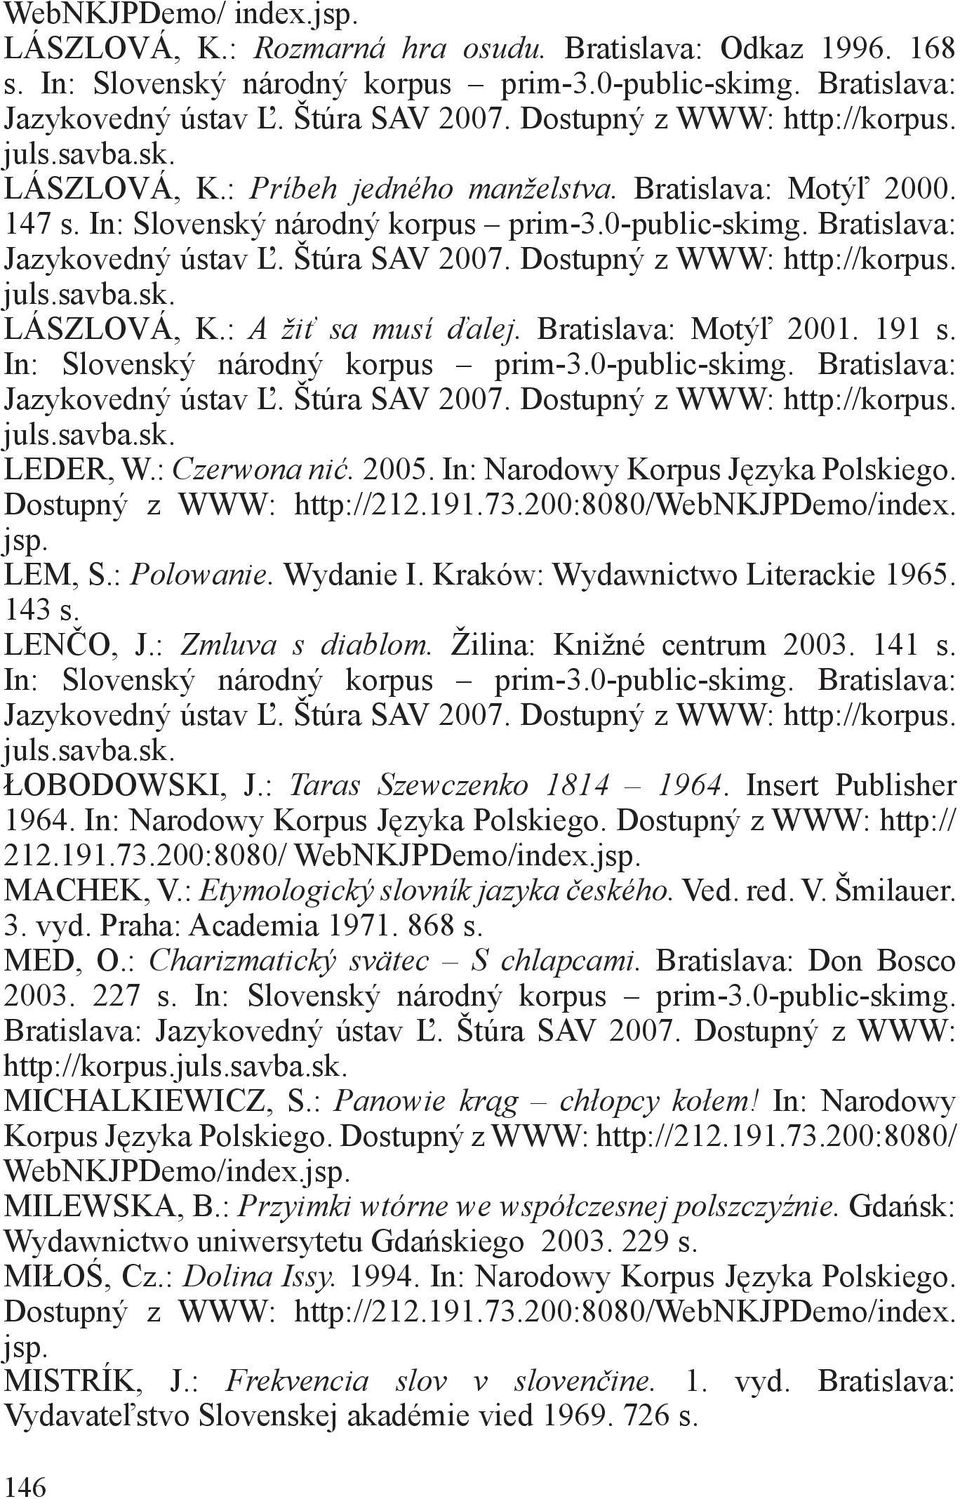 Kraków: Wydawnictwo Literackie 1965. 143 s. LENČO, J.: Zmluva s diablom. Žilina: Knižné centrum 2003. 141 s. ŁOBODOWSKI, J.: Taras Szewczenko 1814 1964. Insert Publisher 1964.